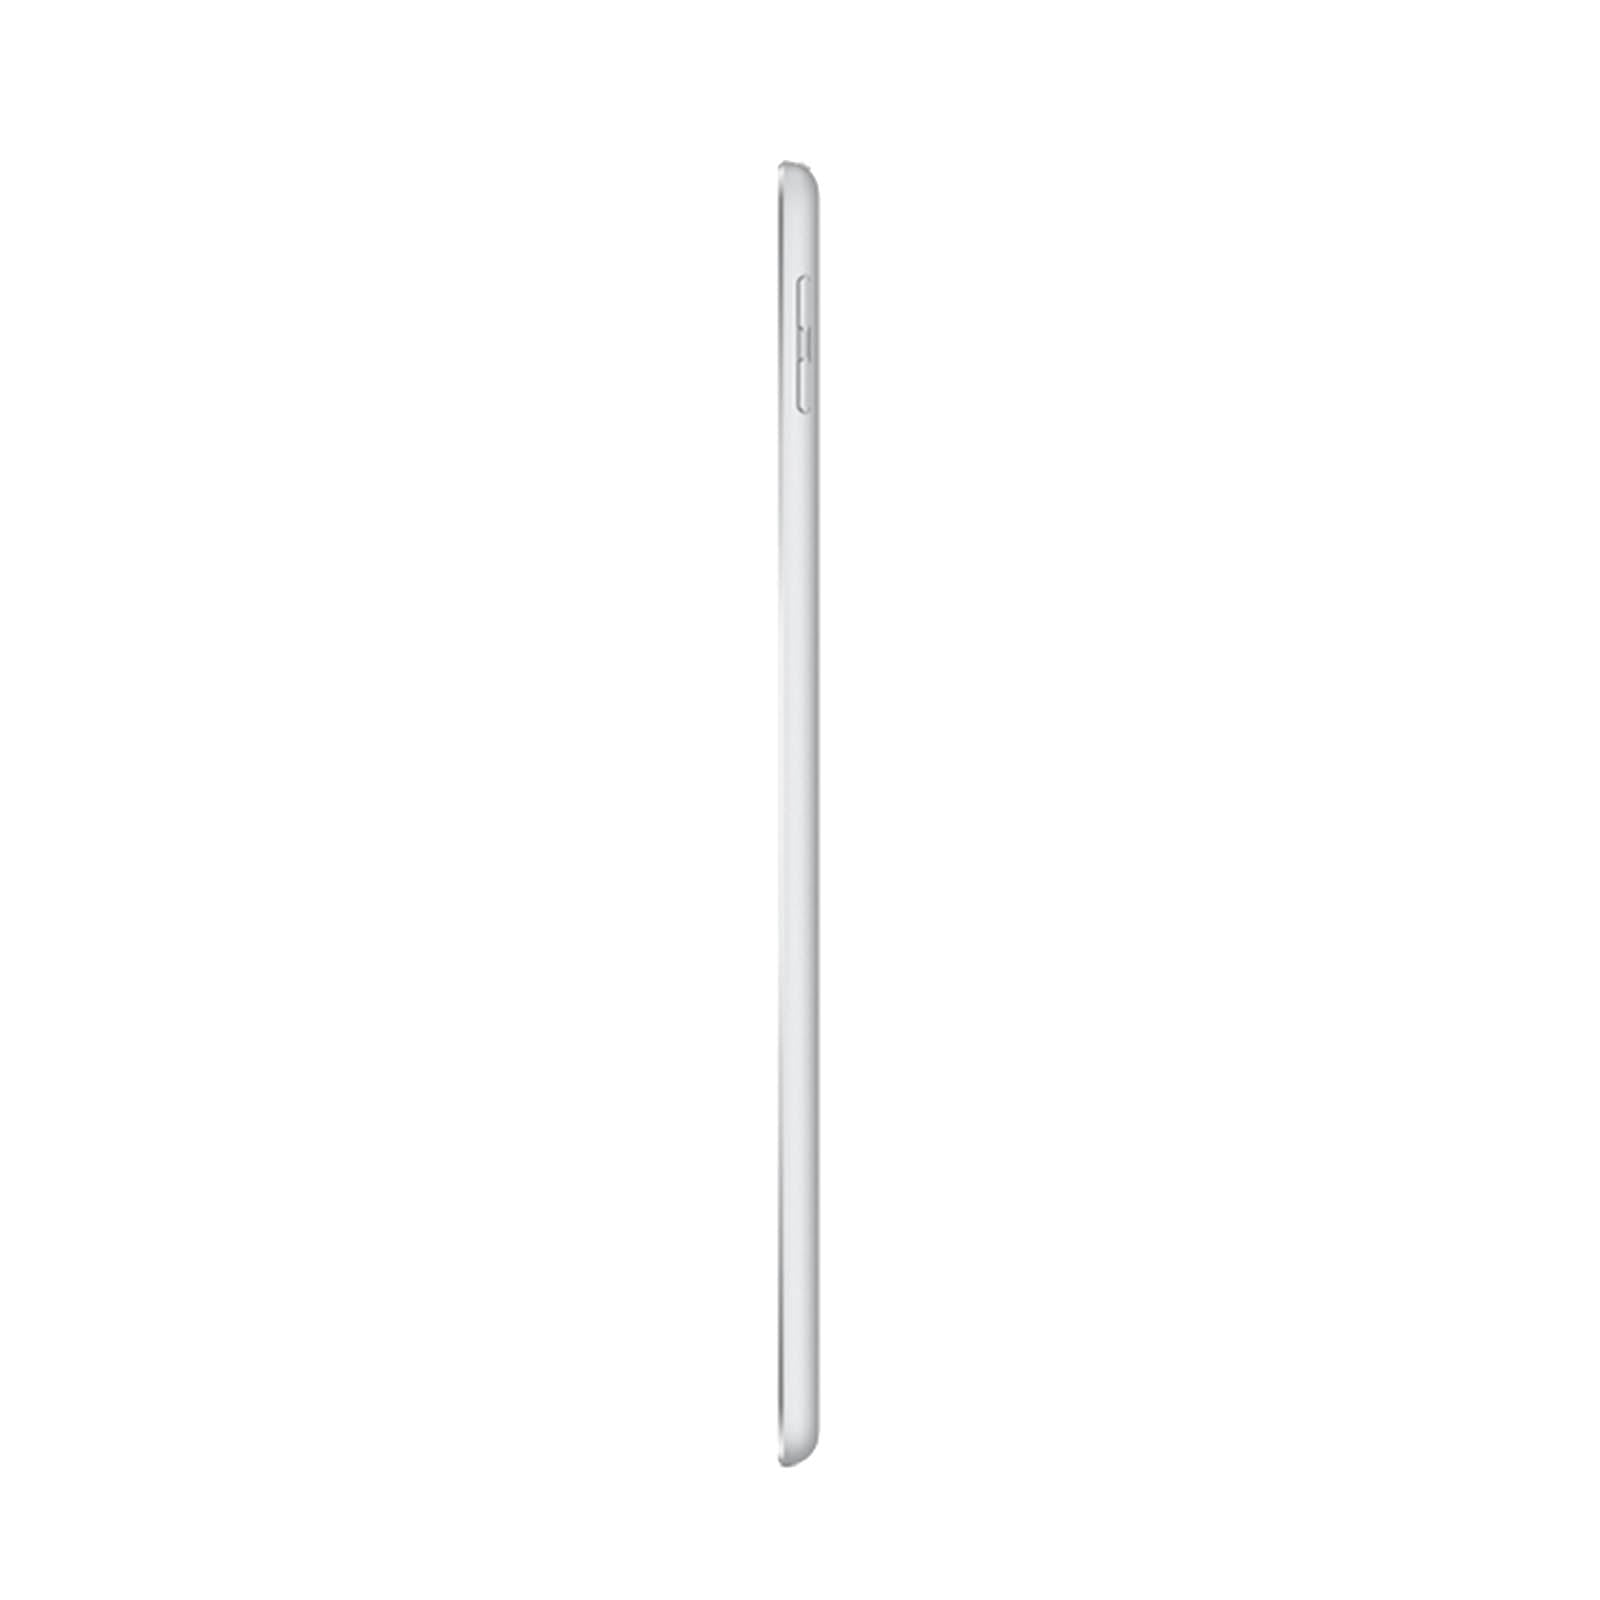 Apple iPad 5 32GB WiFi Silver - Very Good